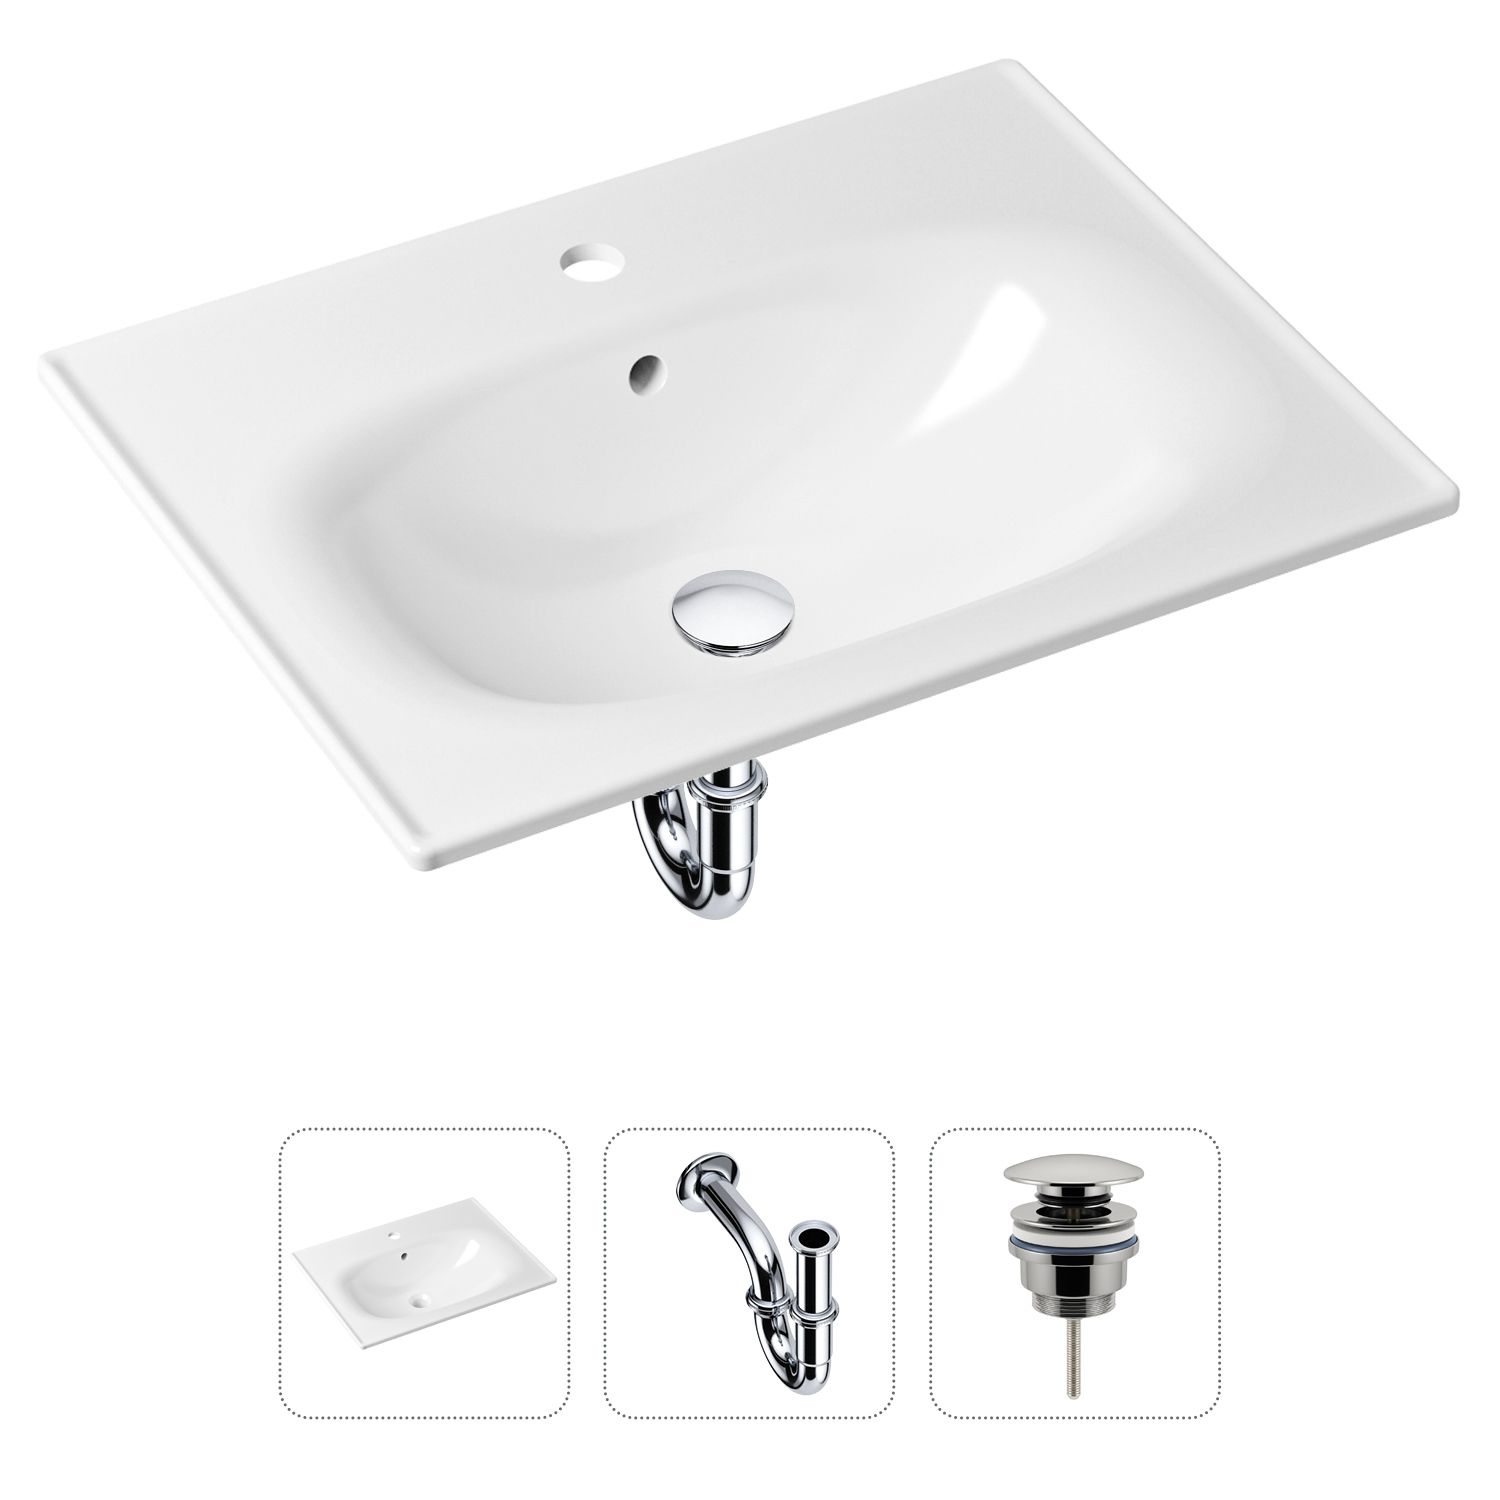 Комплект 3 в 1 Lavinia Boho Bathroom Sink 21520434: раковина 60 см, сифон, донный клапан